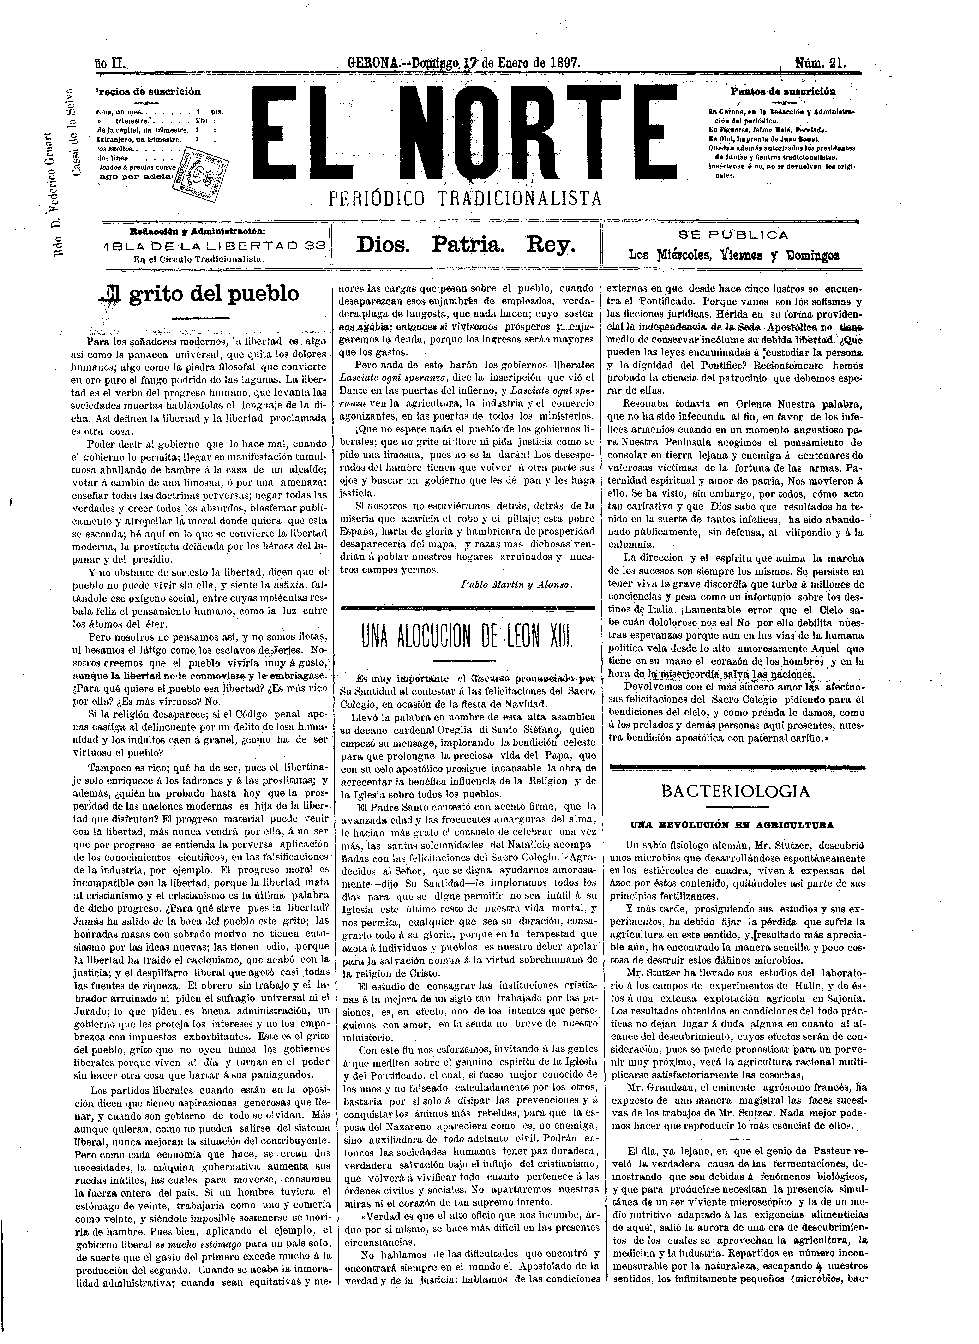 Norte, El. 17/1/1897. [Issue]